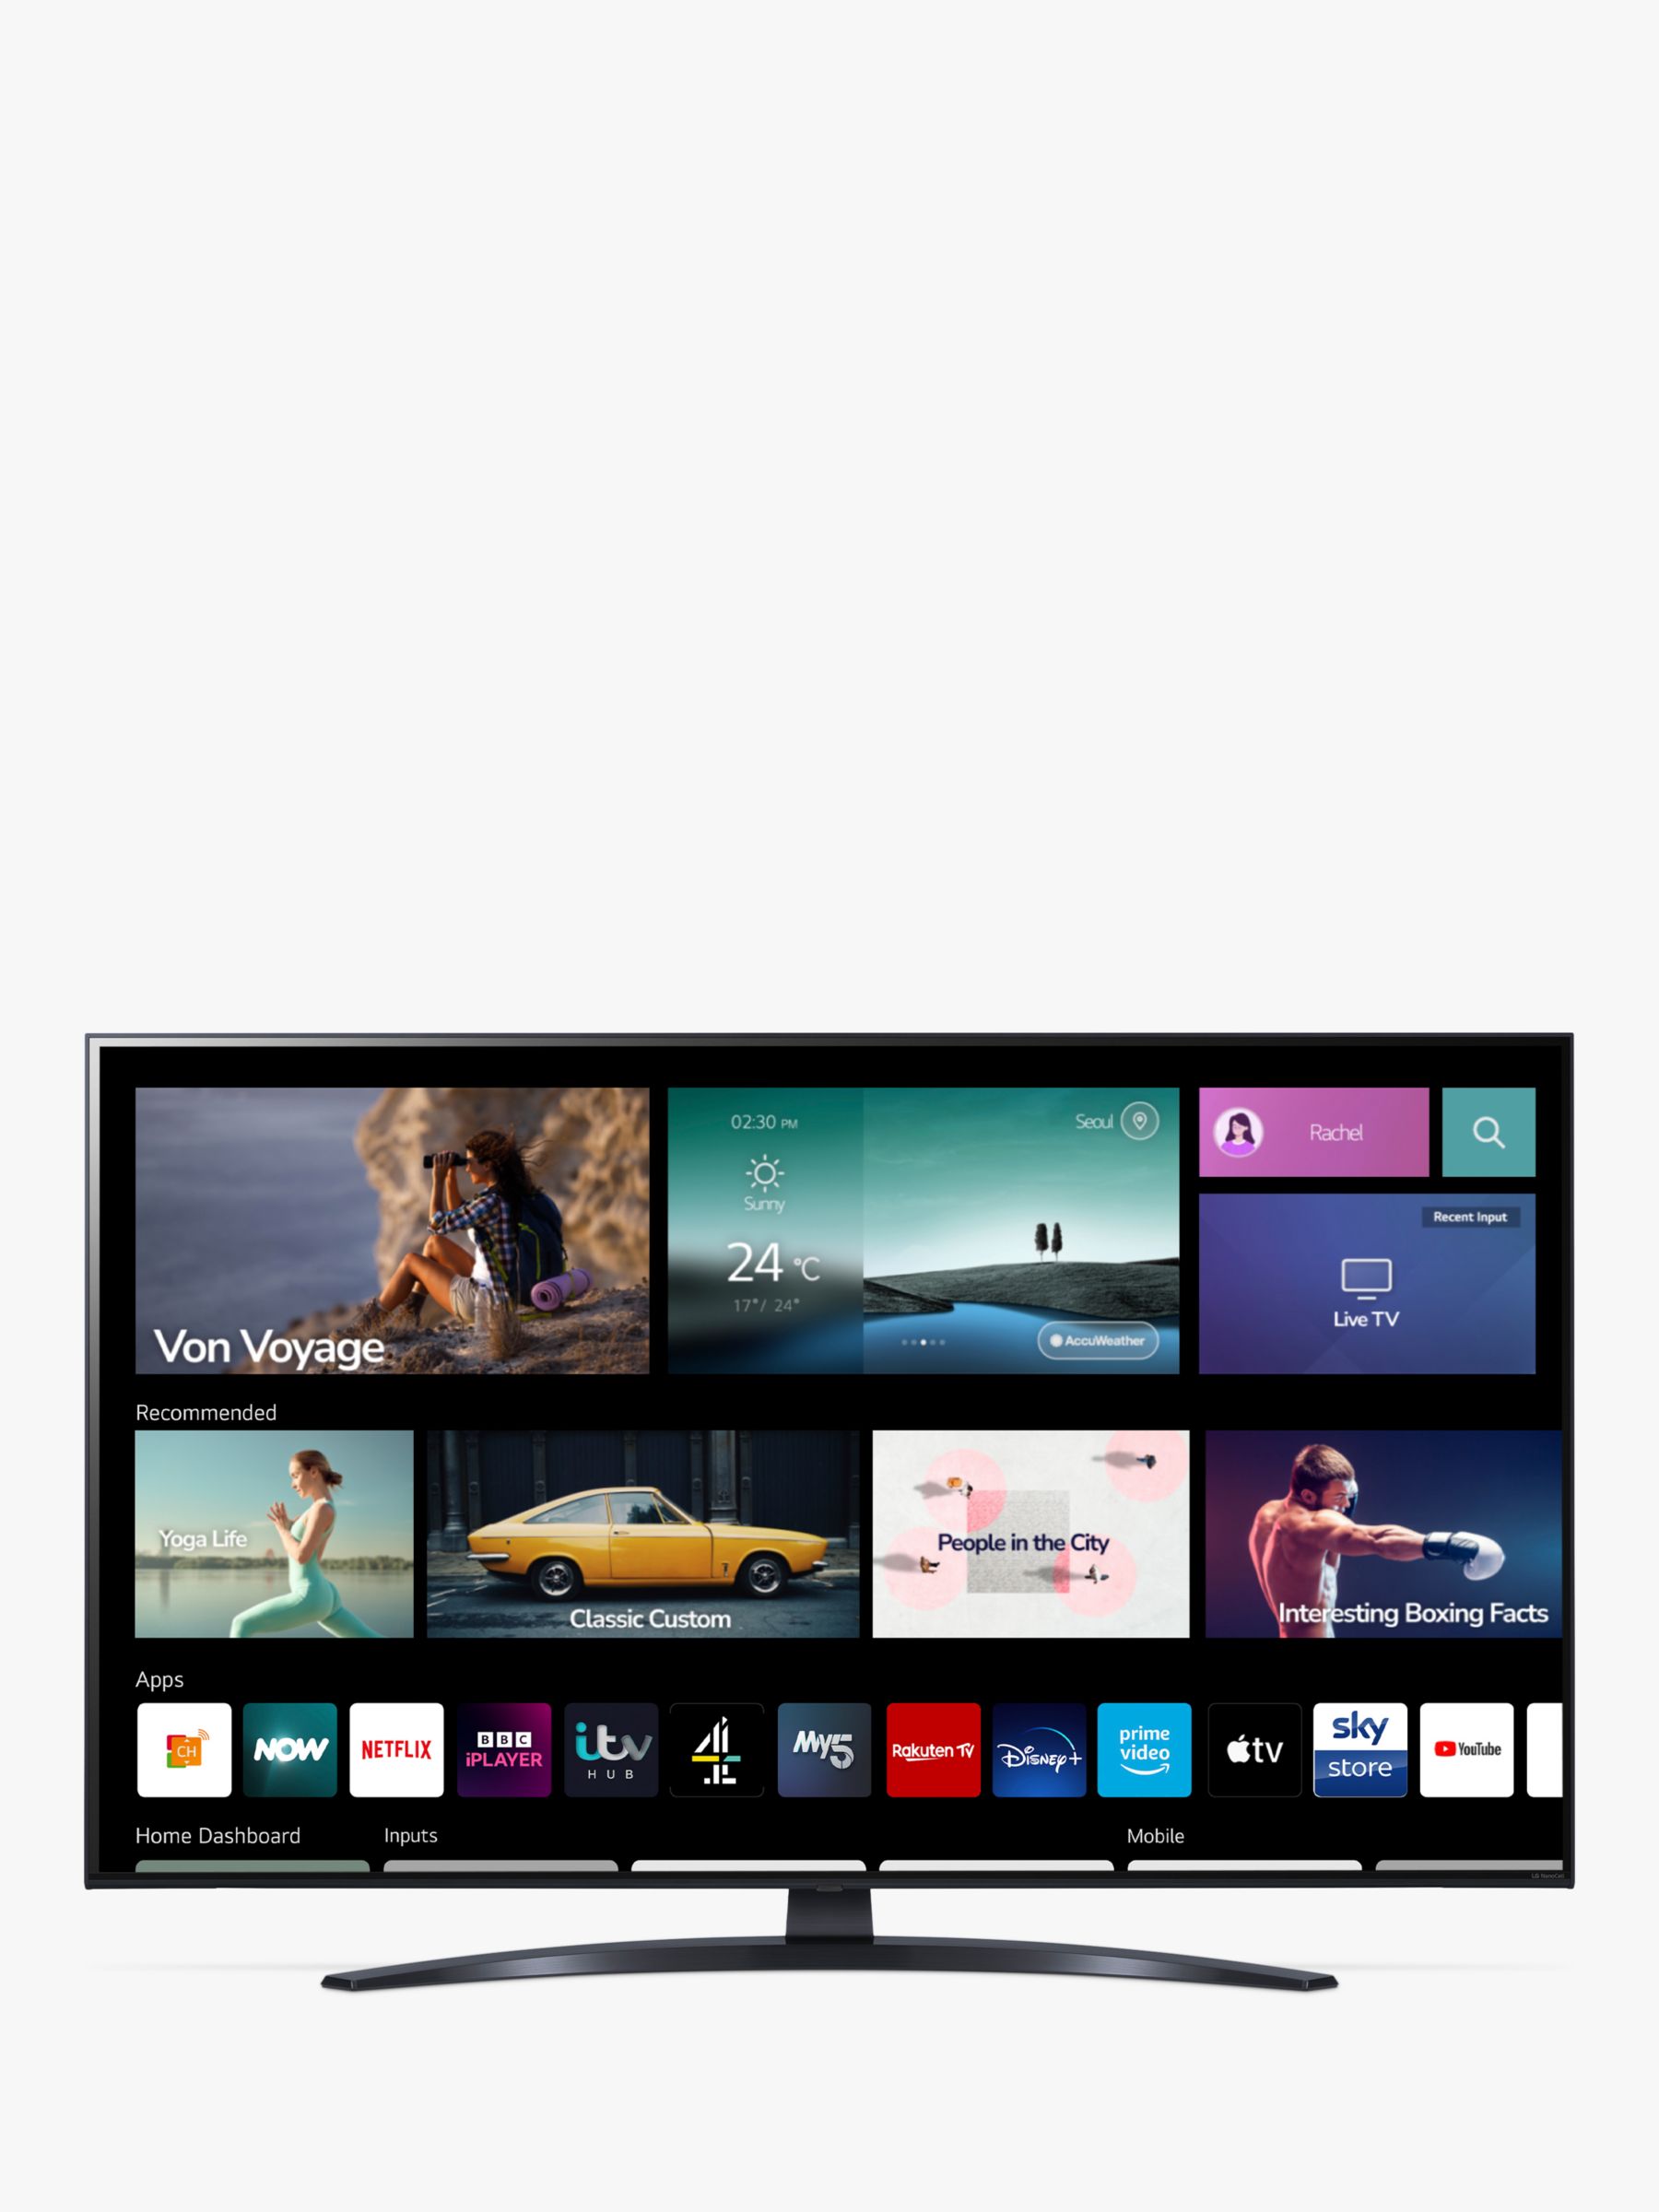 LG NanoCell NANO76 50 inch 4K Smart TV - 50NANO763QA LED TV 